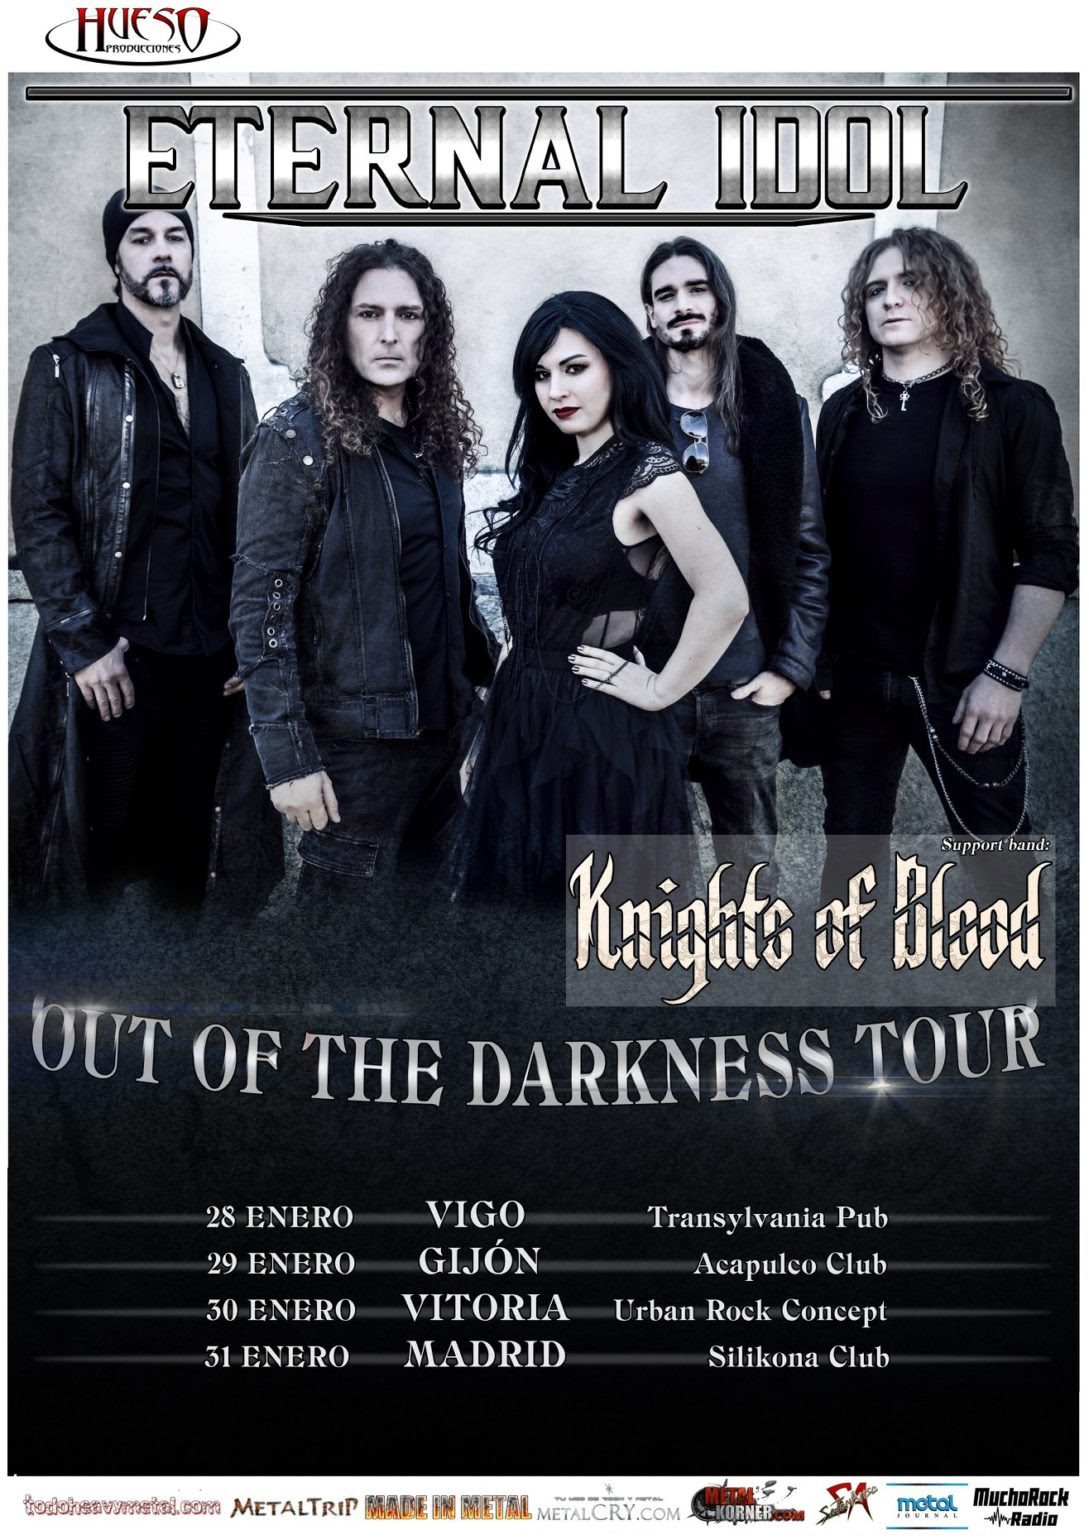 Knights of Blood invitados para la gira de Eternal Idol con Fabio Lione